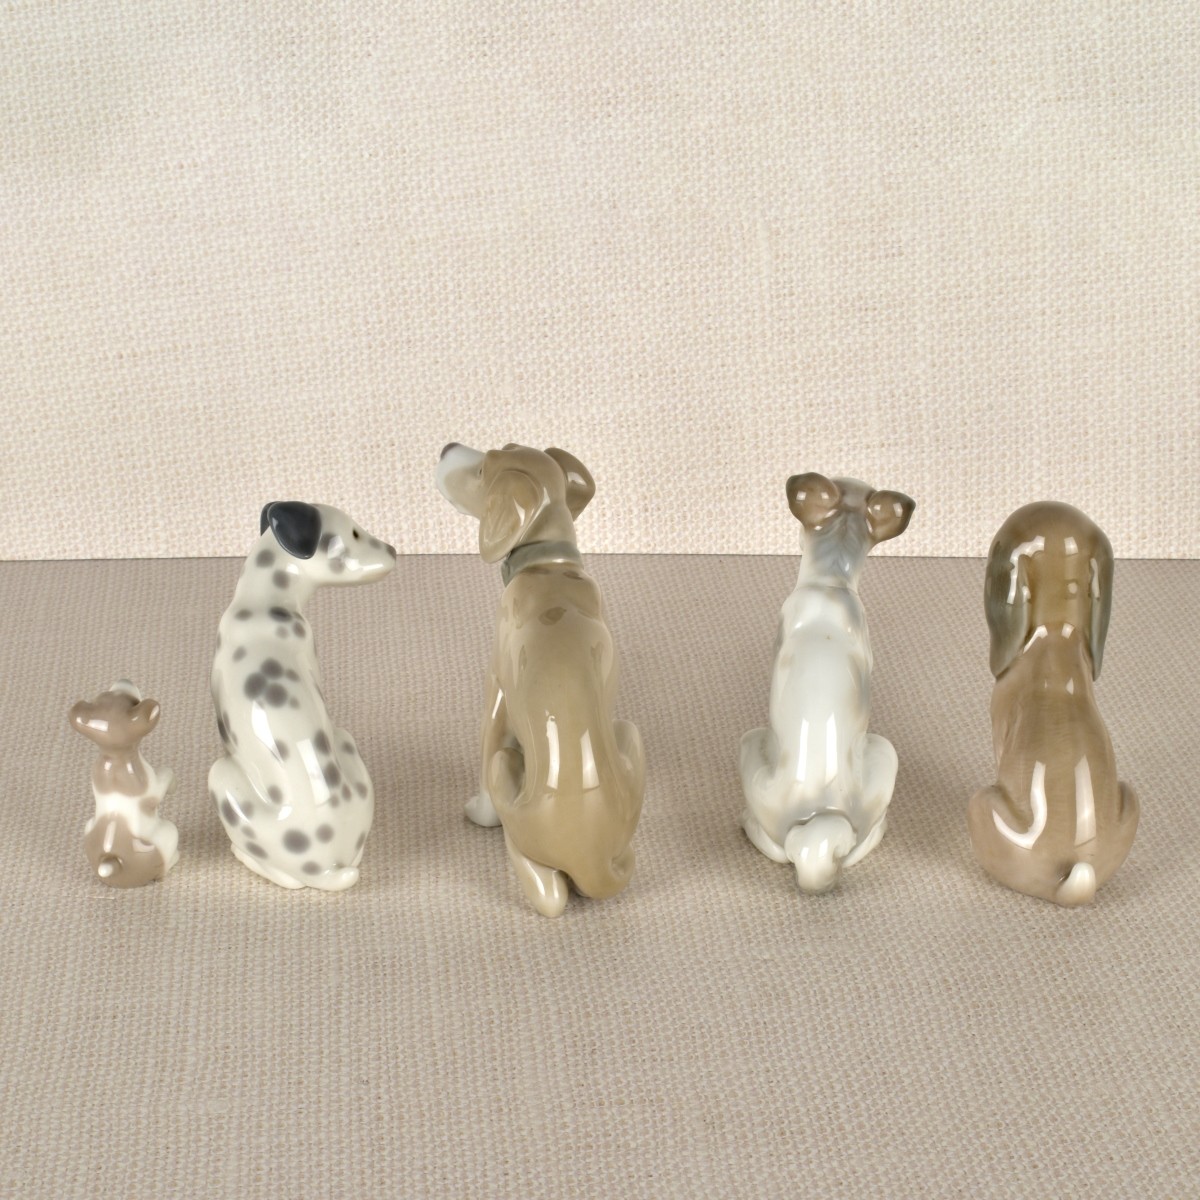 Five Lladro Porcelain Dog Figurines